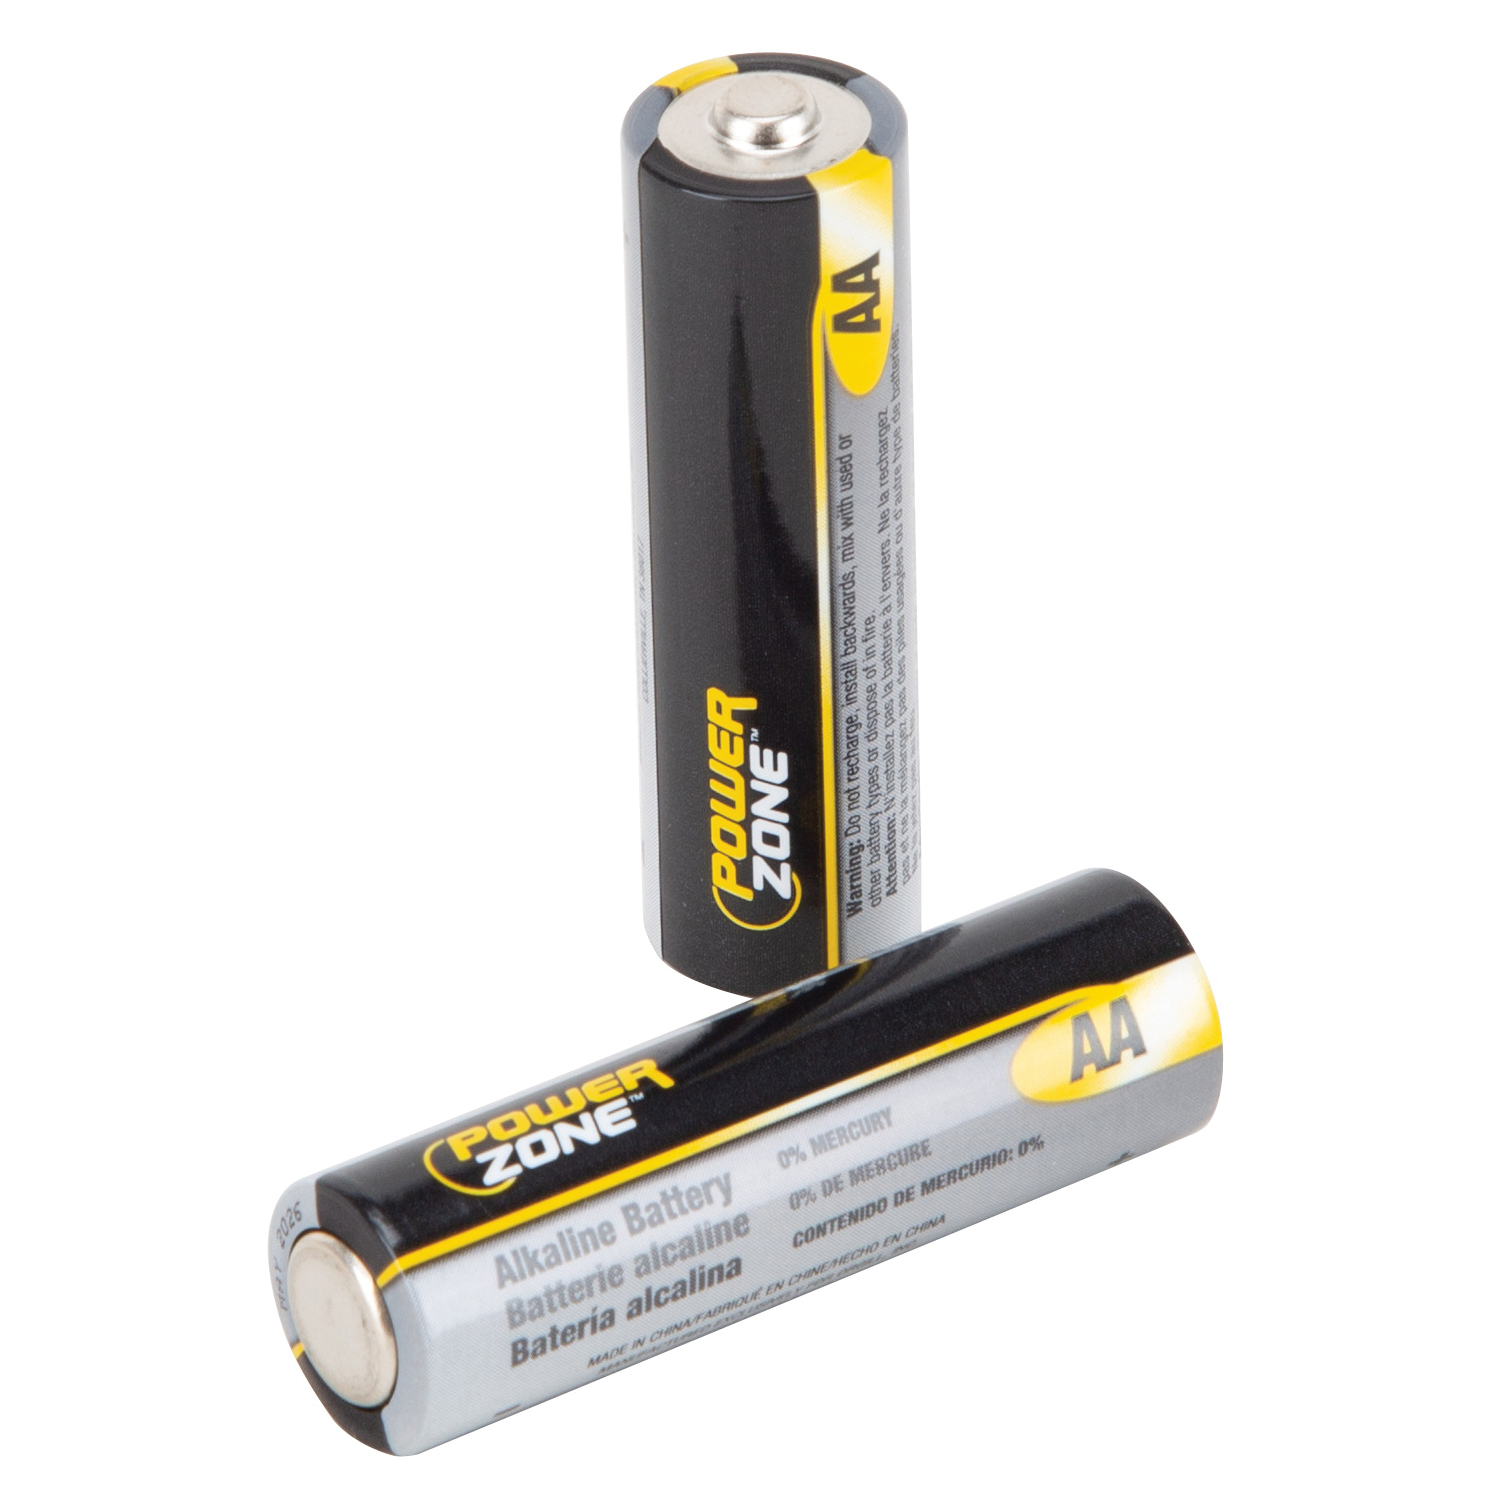 PowerZone LR6-24P, 1.5 V Battery, AA Battery, 24 pk